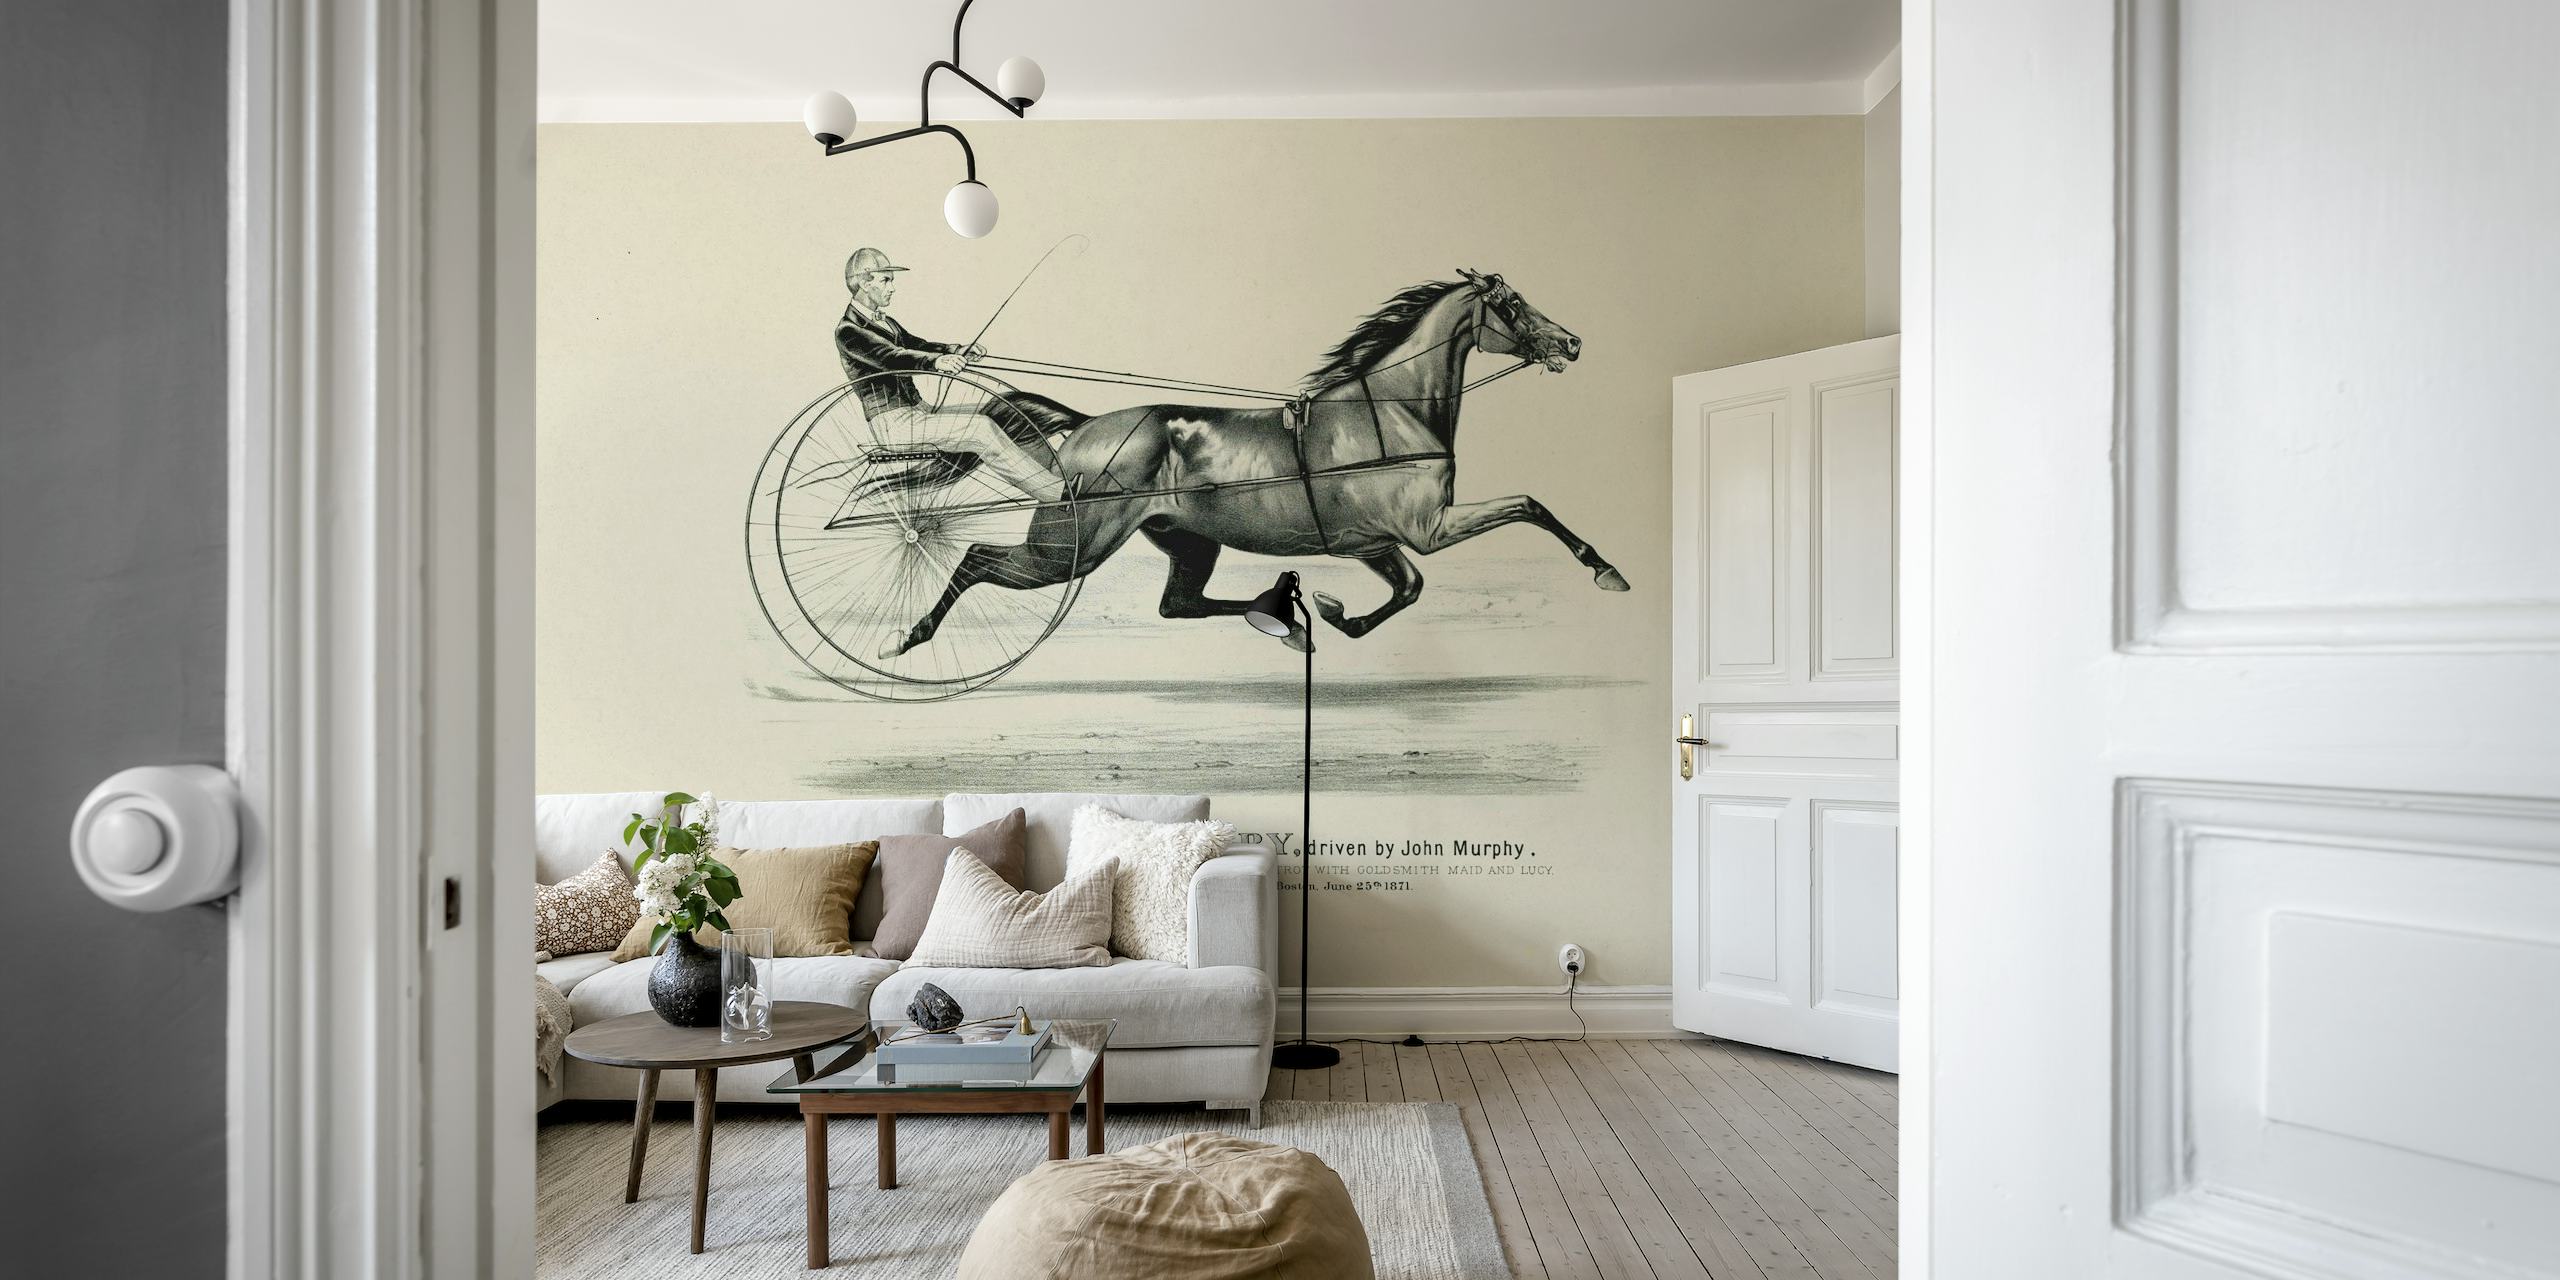 Peinture murale d'art d'équitation historique représentant un cheval et un cavalier dans un style classique.